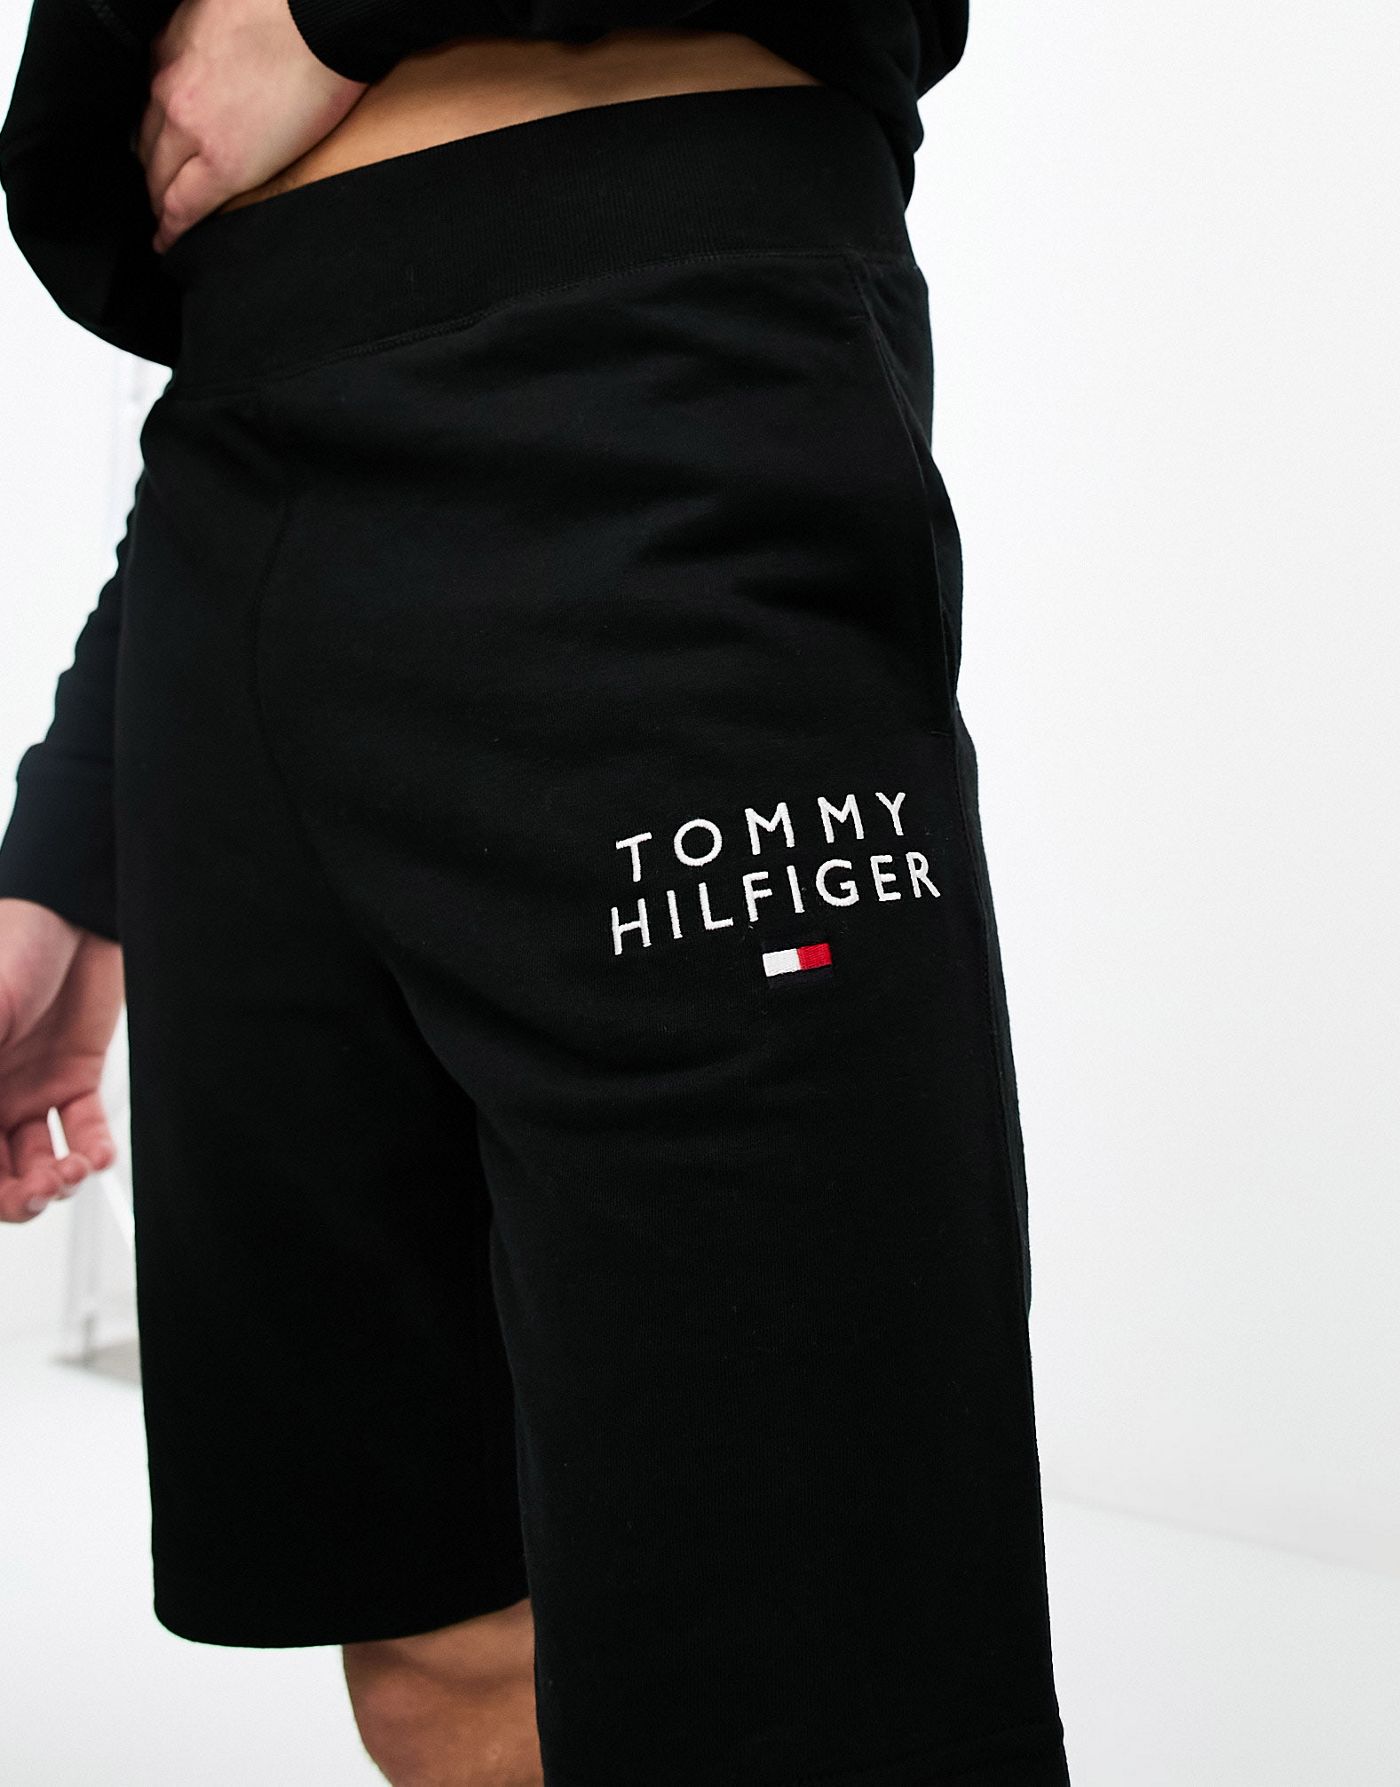 Tommy Hilfiger Original shorts in black 